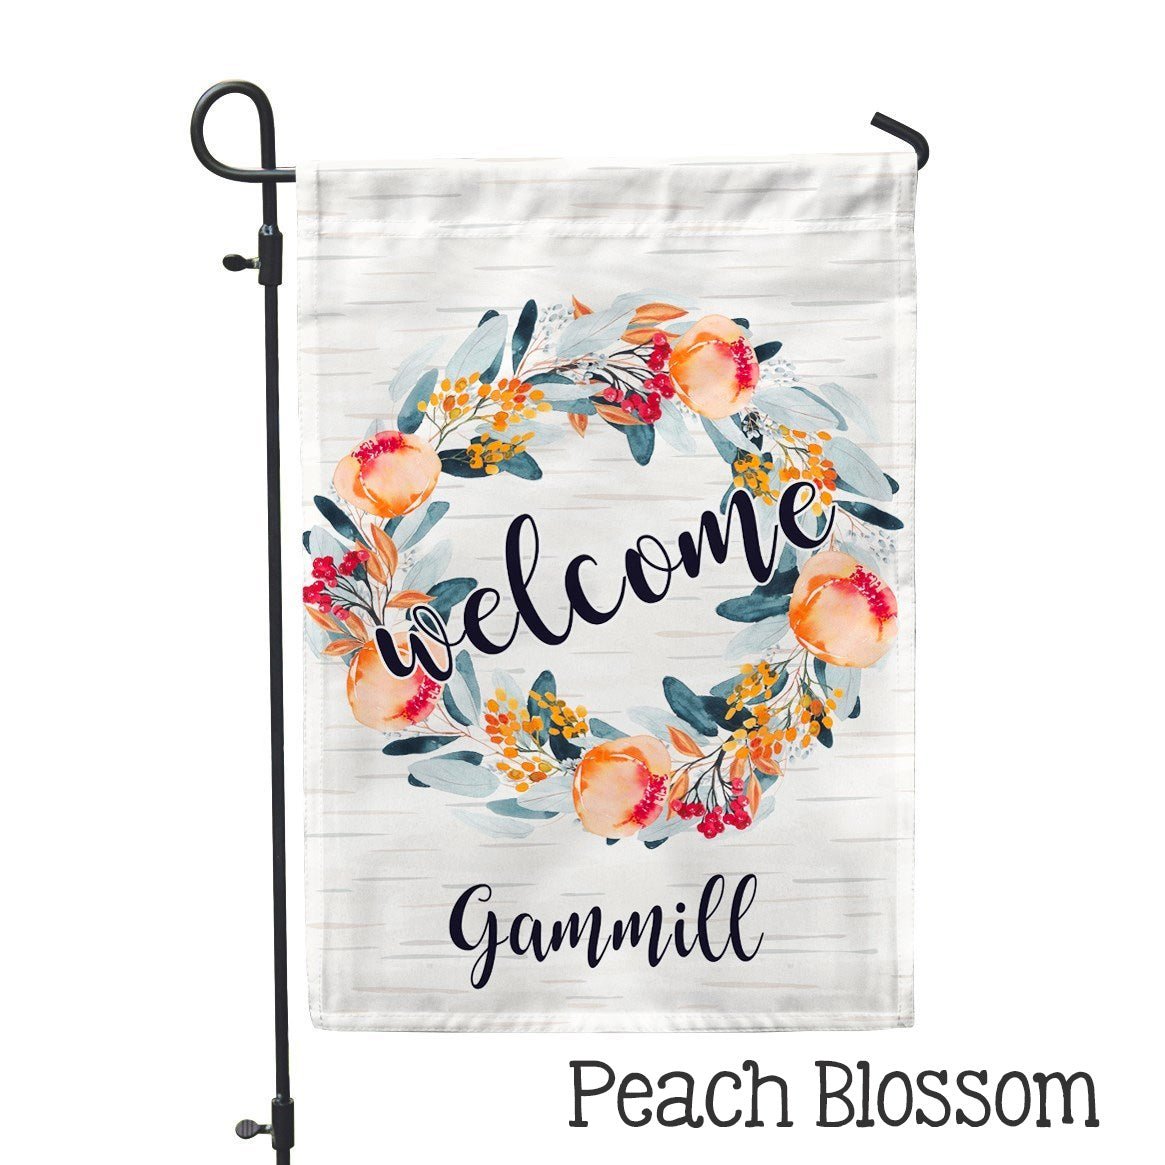 Personalized Garden Flag - Peach Blossom Custom Home Flag - 12" x 18" - Second East